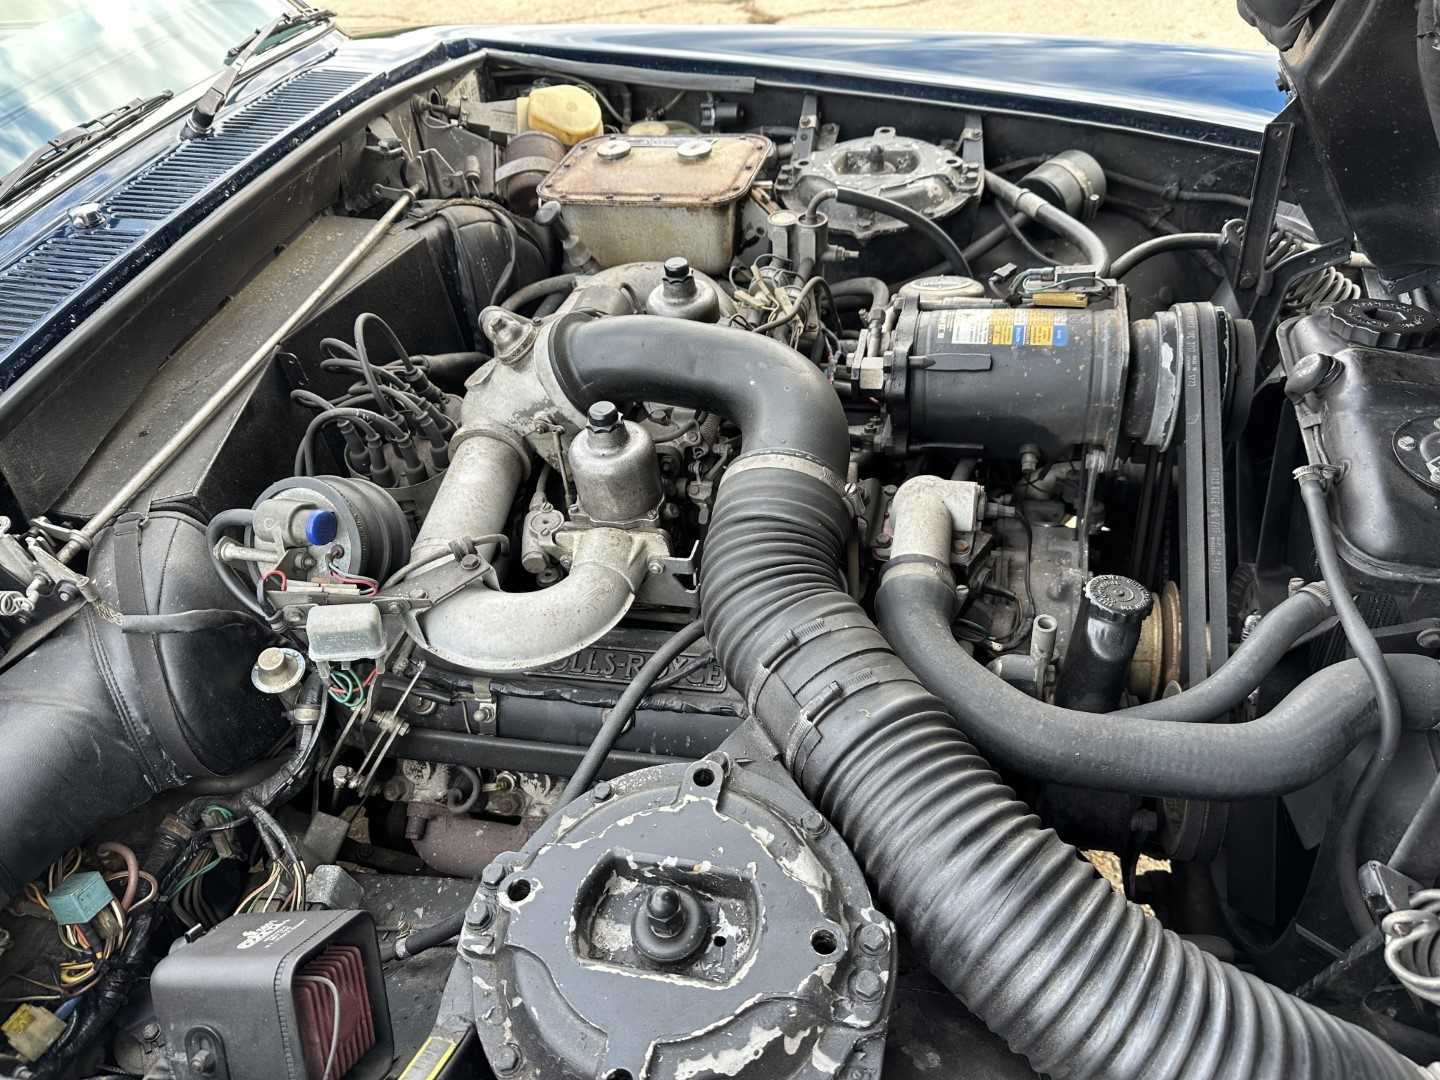 1977 Rolls - Royce Silver Shadow II 6750cc engine, reg. PJM 695R - Image 29 of 31